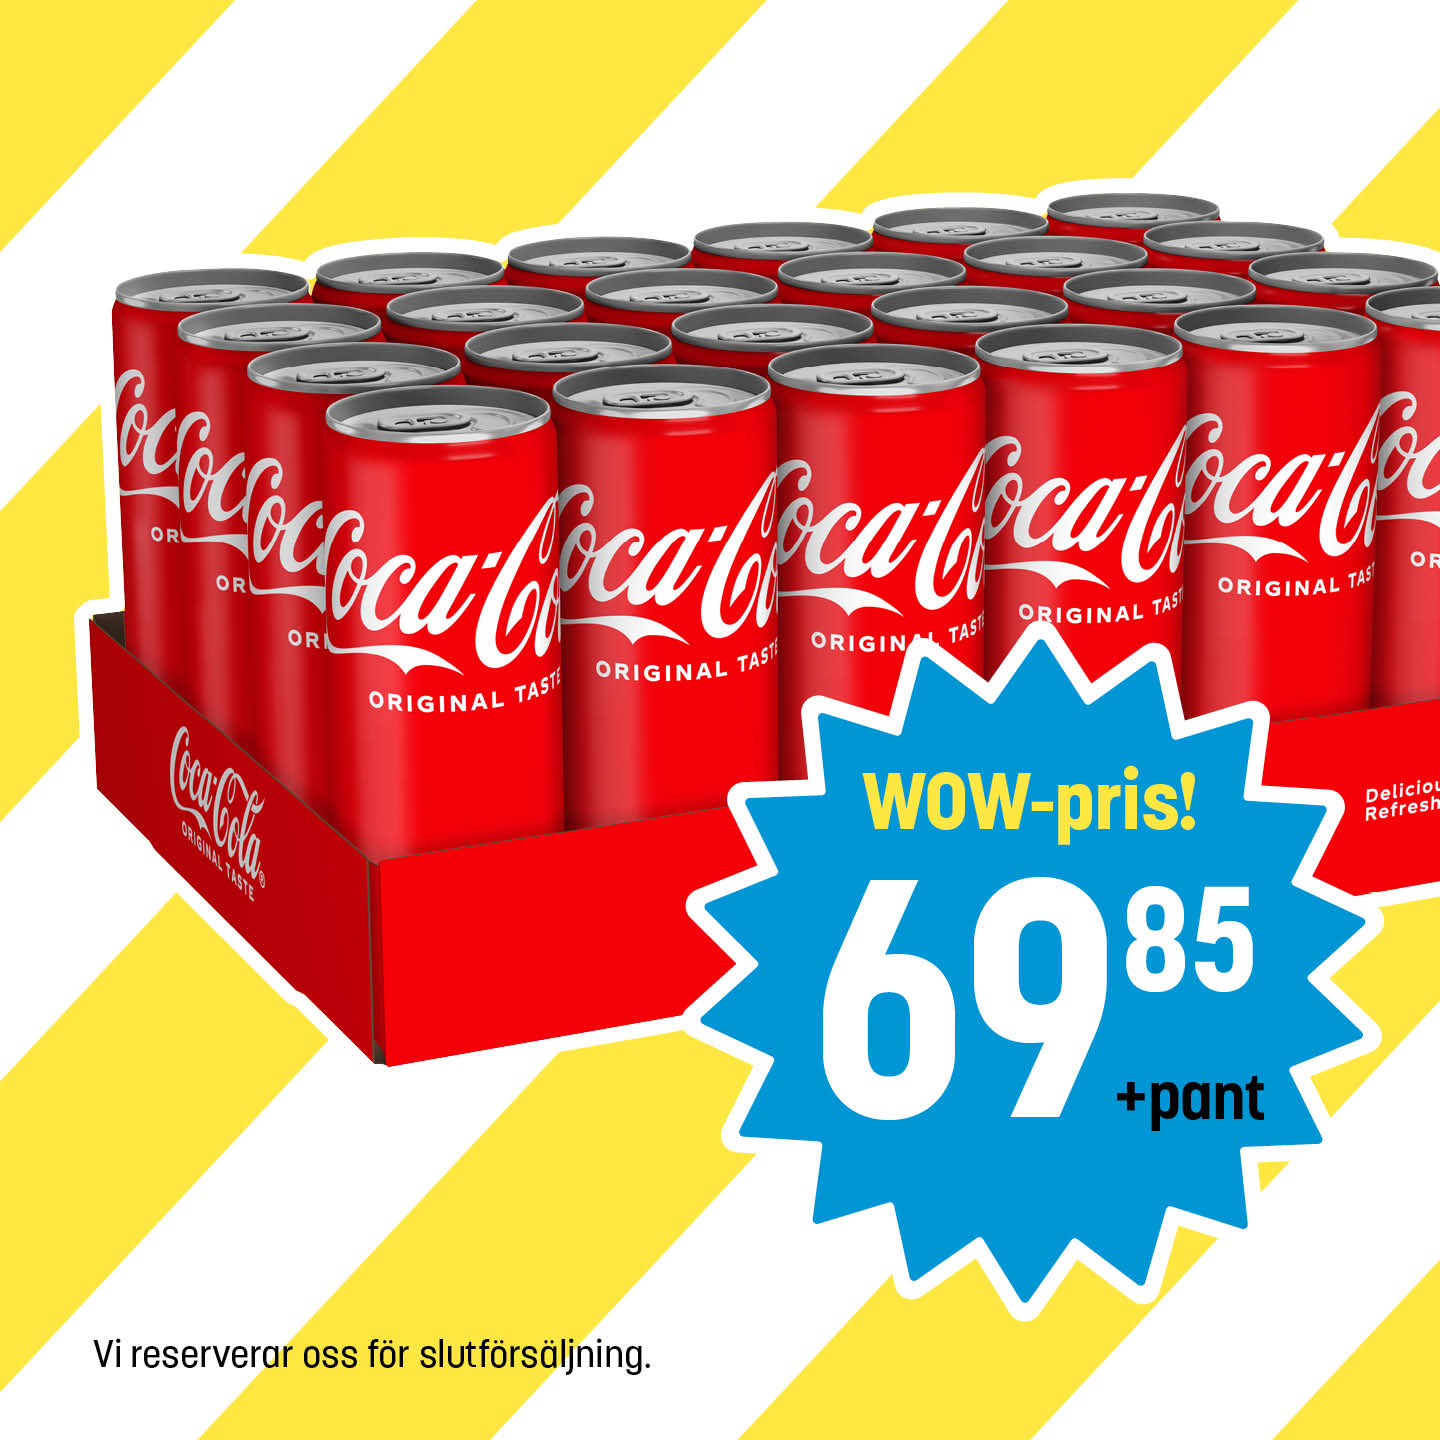 EC_v13_14_Karusell_CocaCola